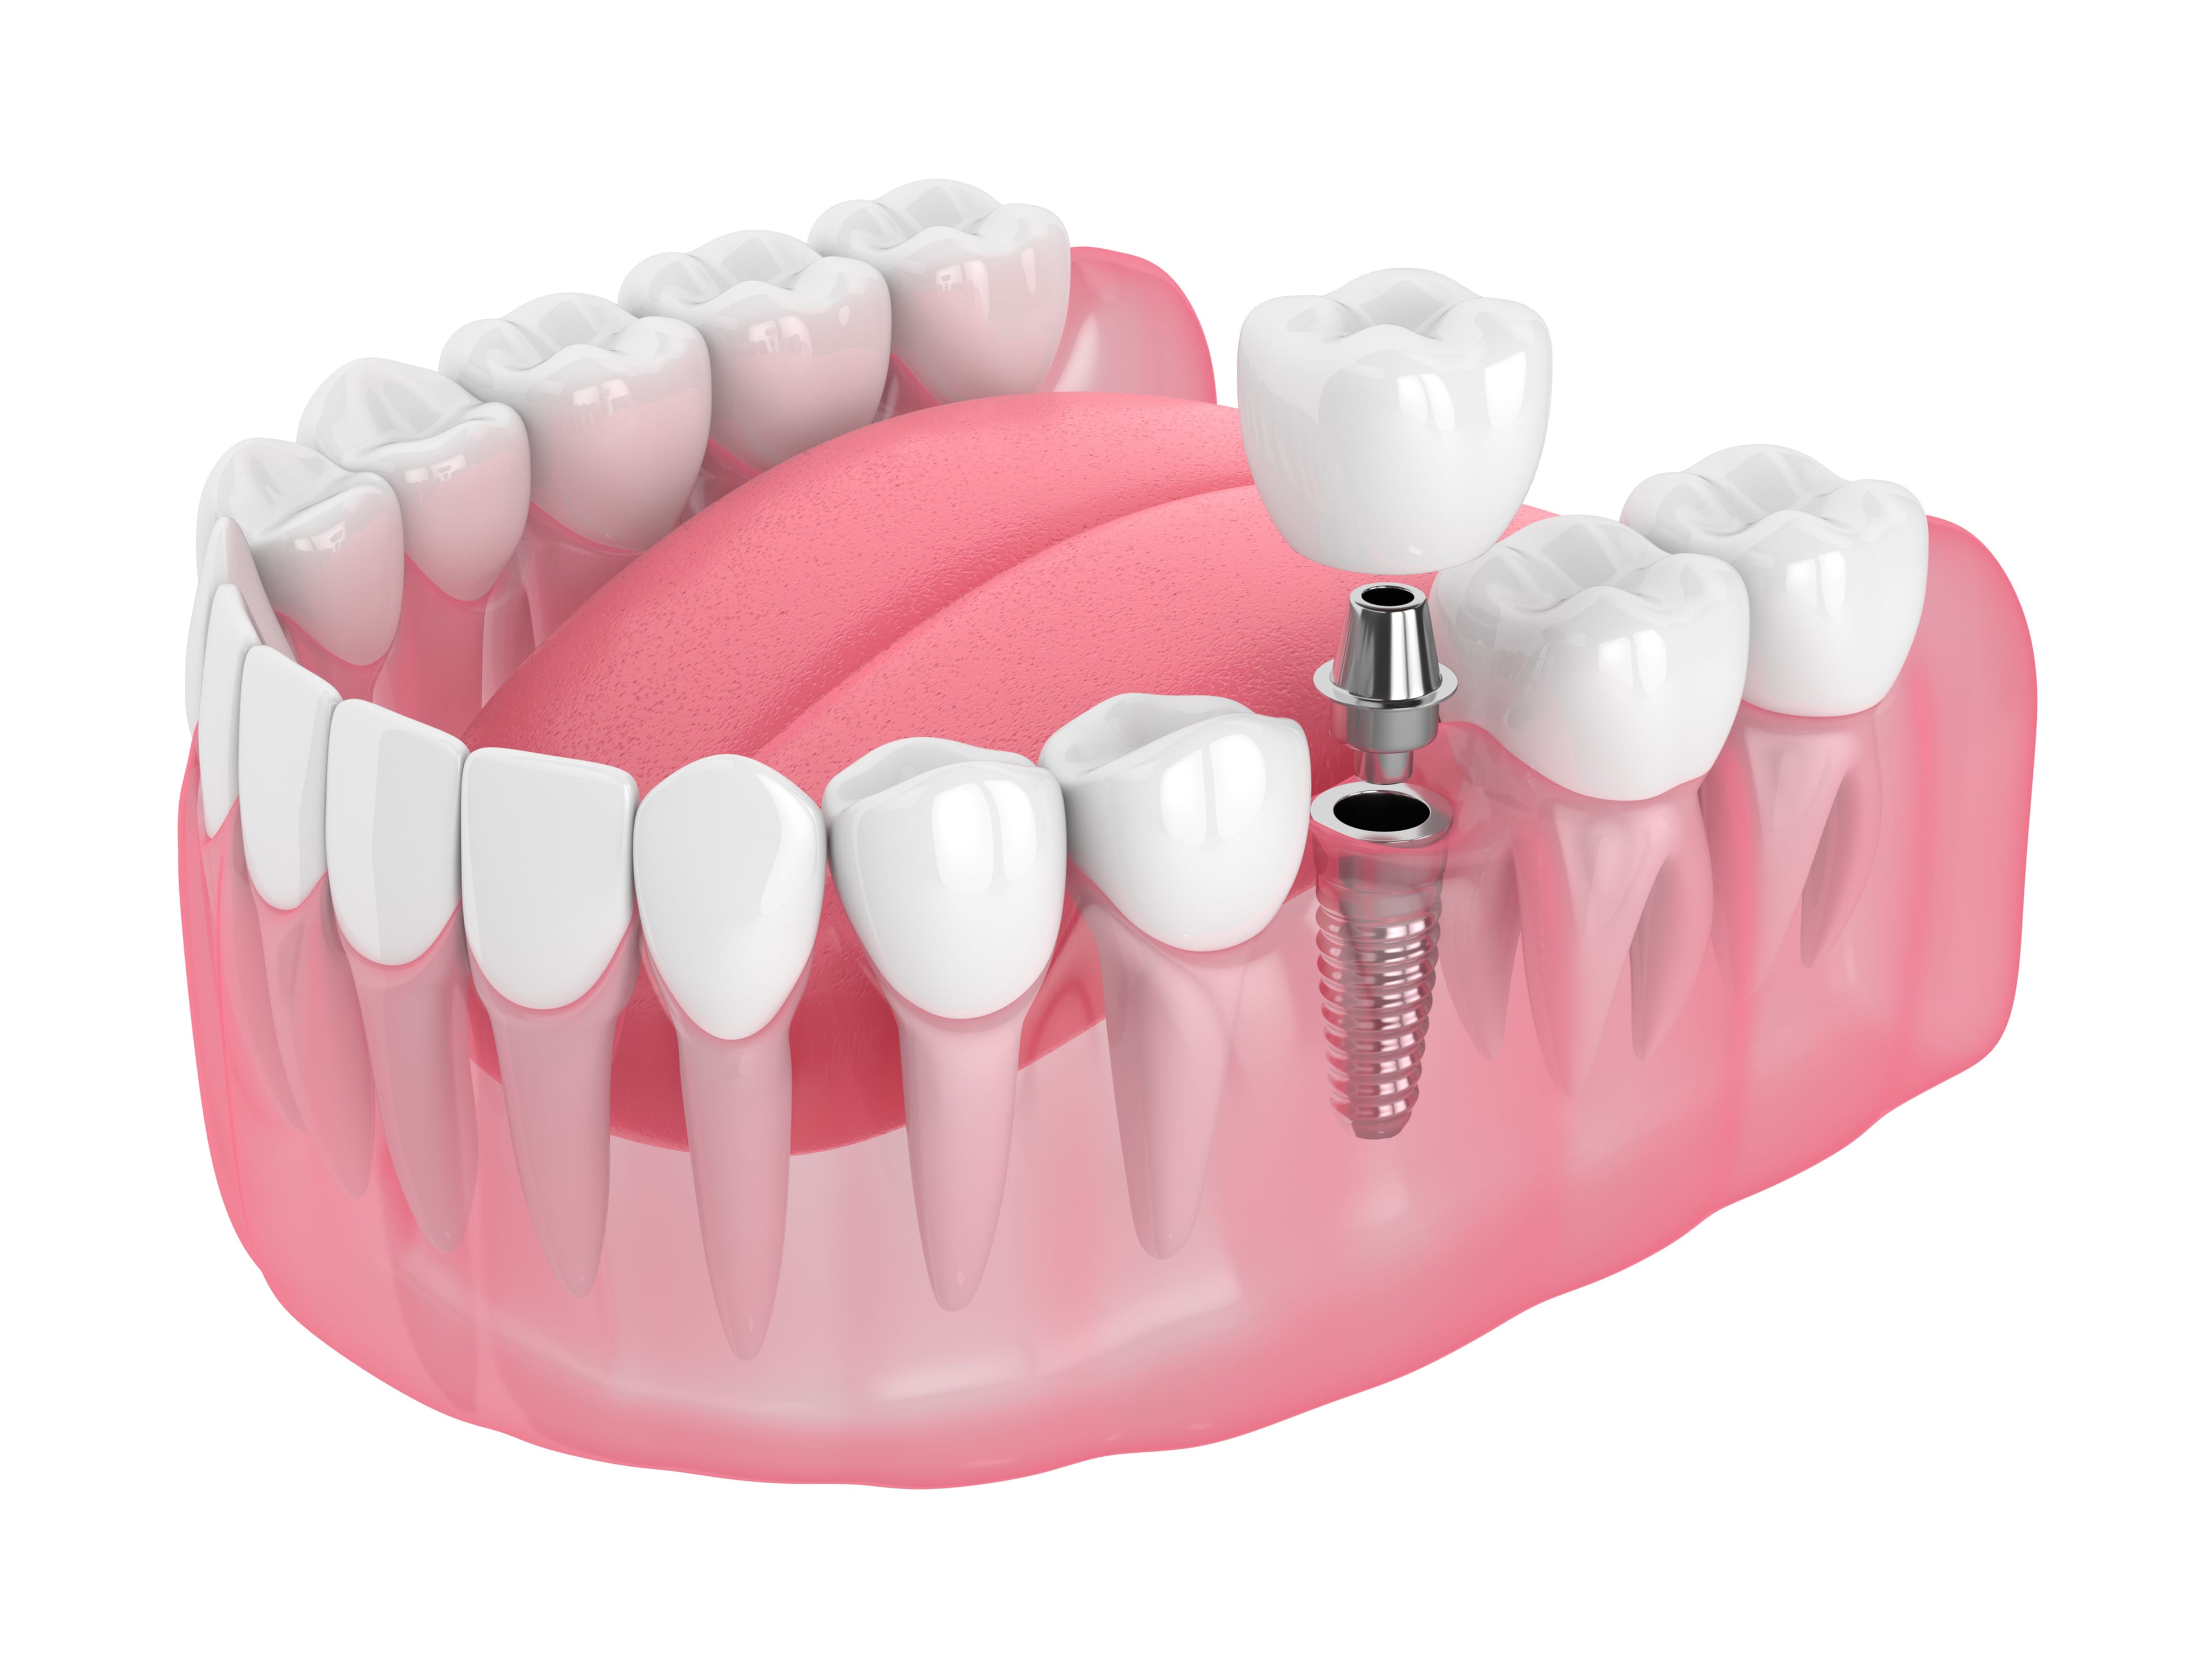 Diş implantını görselleştiren 3 boyutlu modelleme